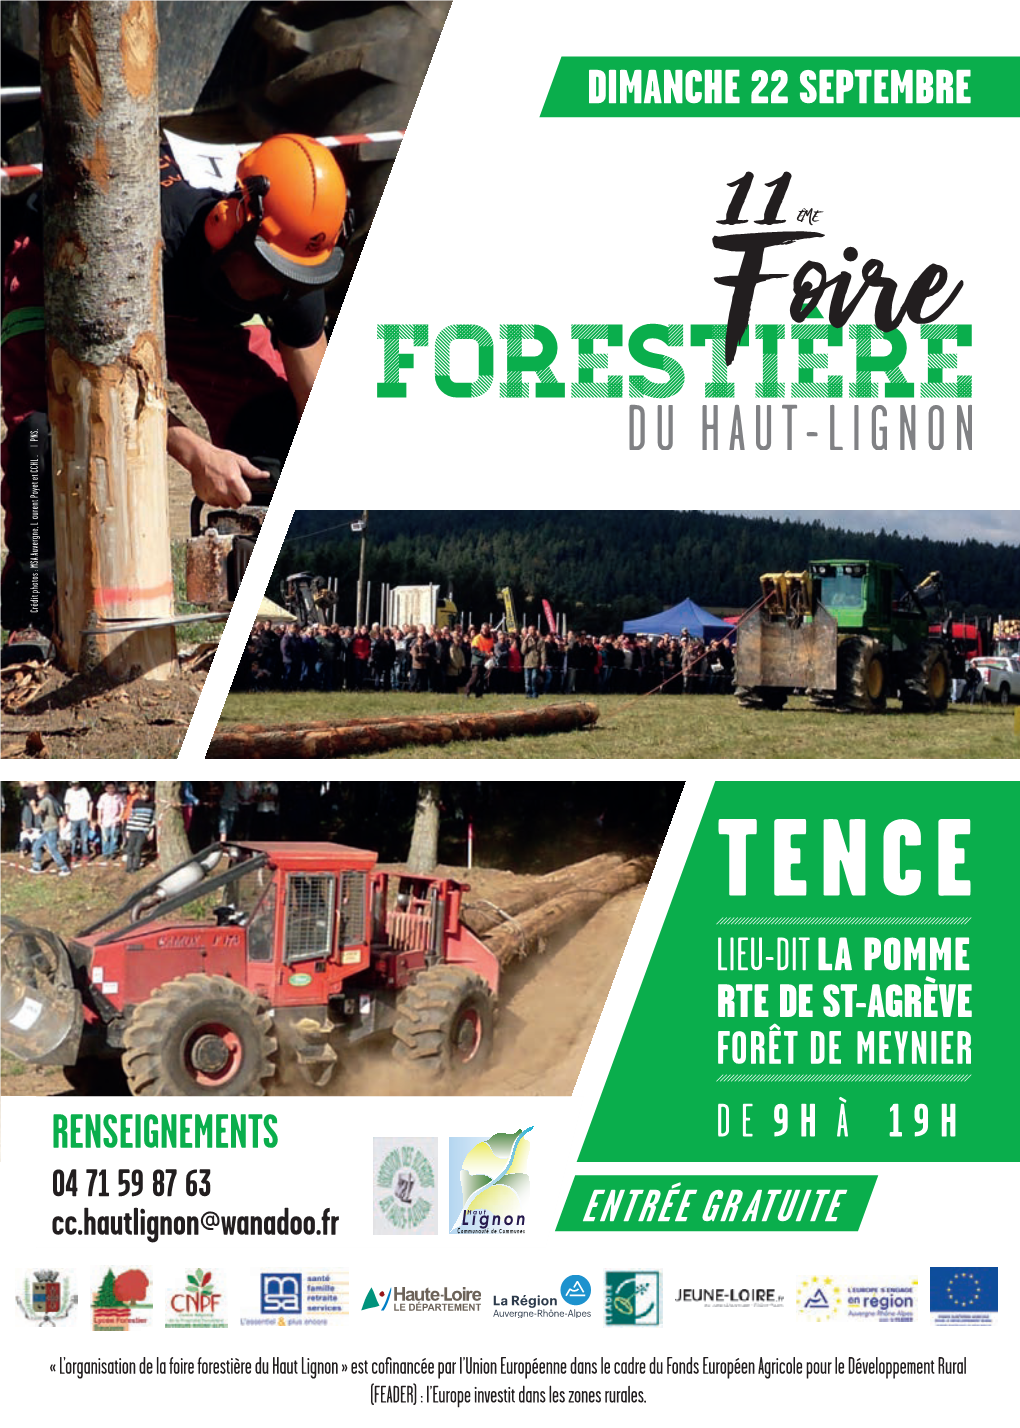 Télécharger La Plaquette De La Foire Forestière 2019 En Cliquant